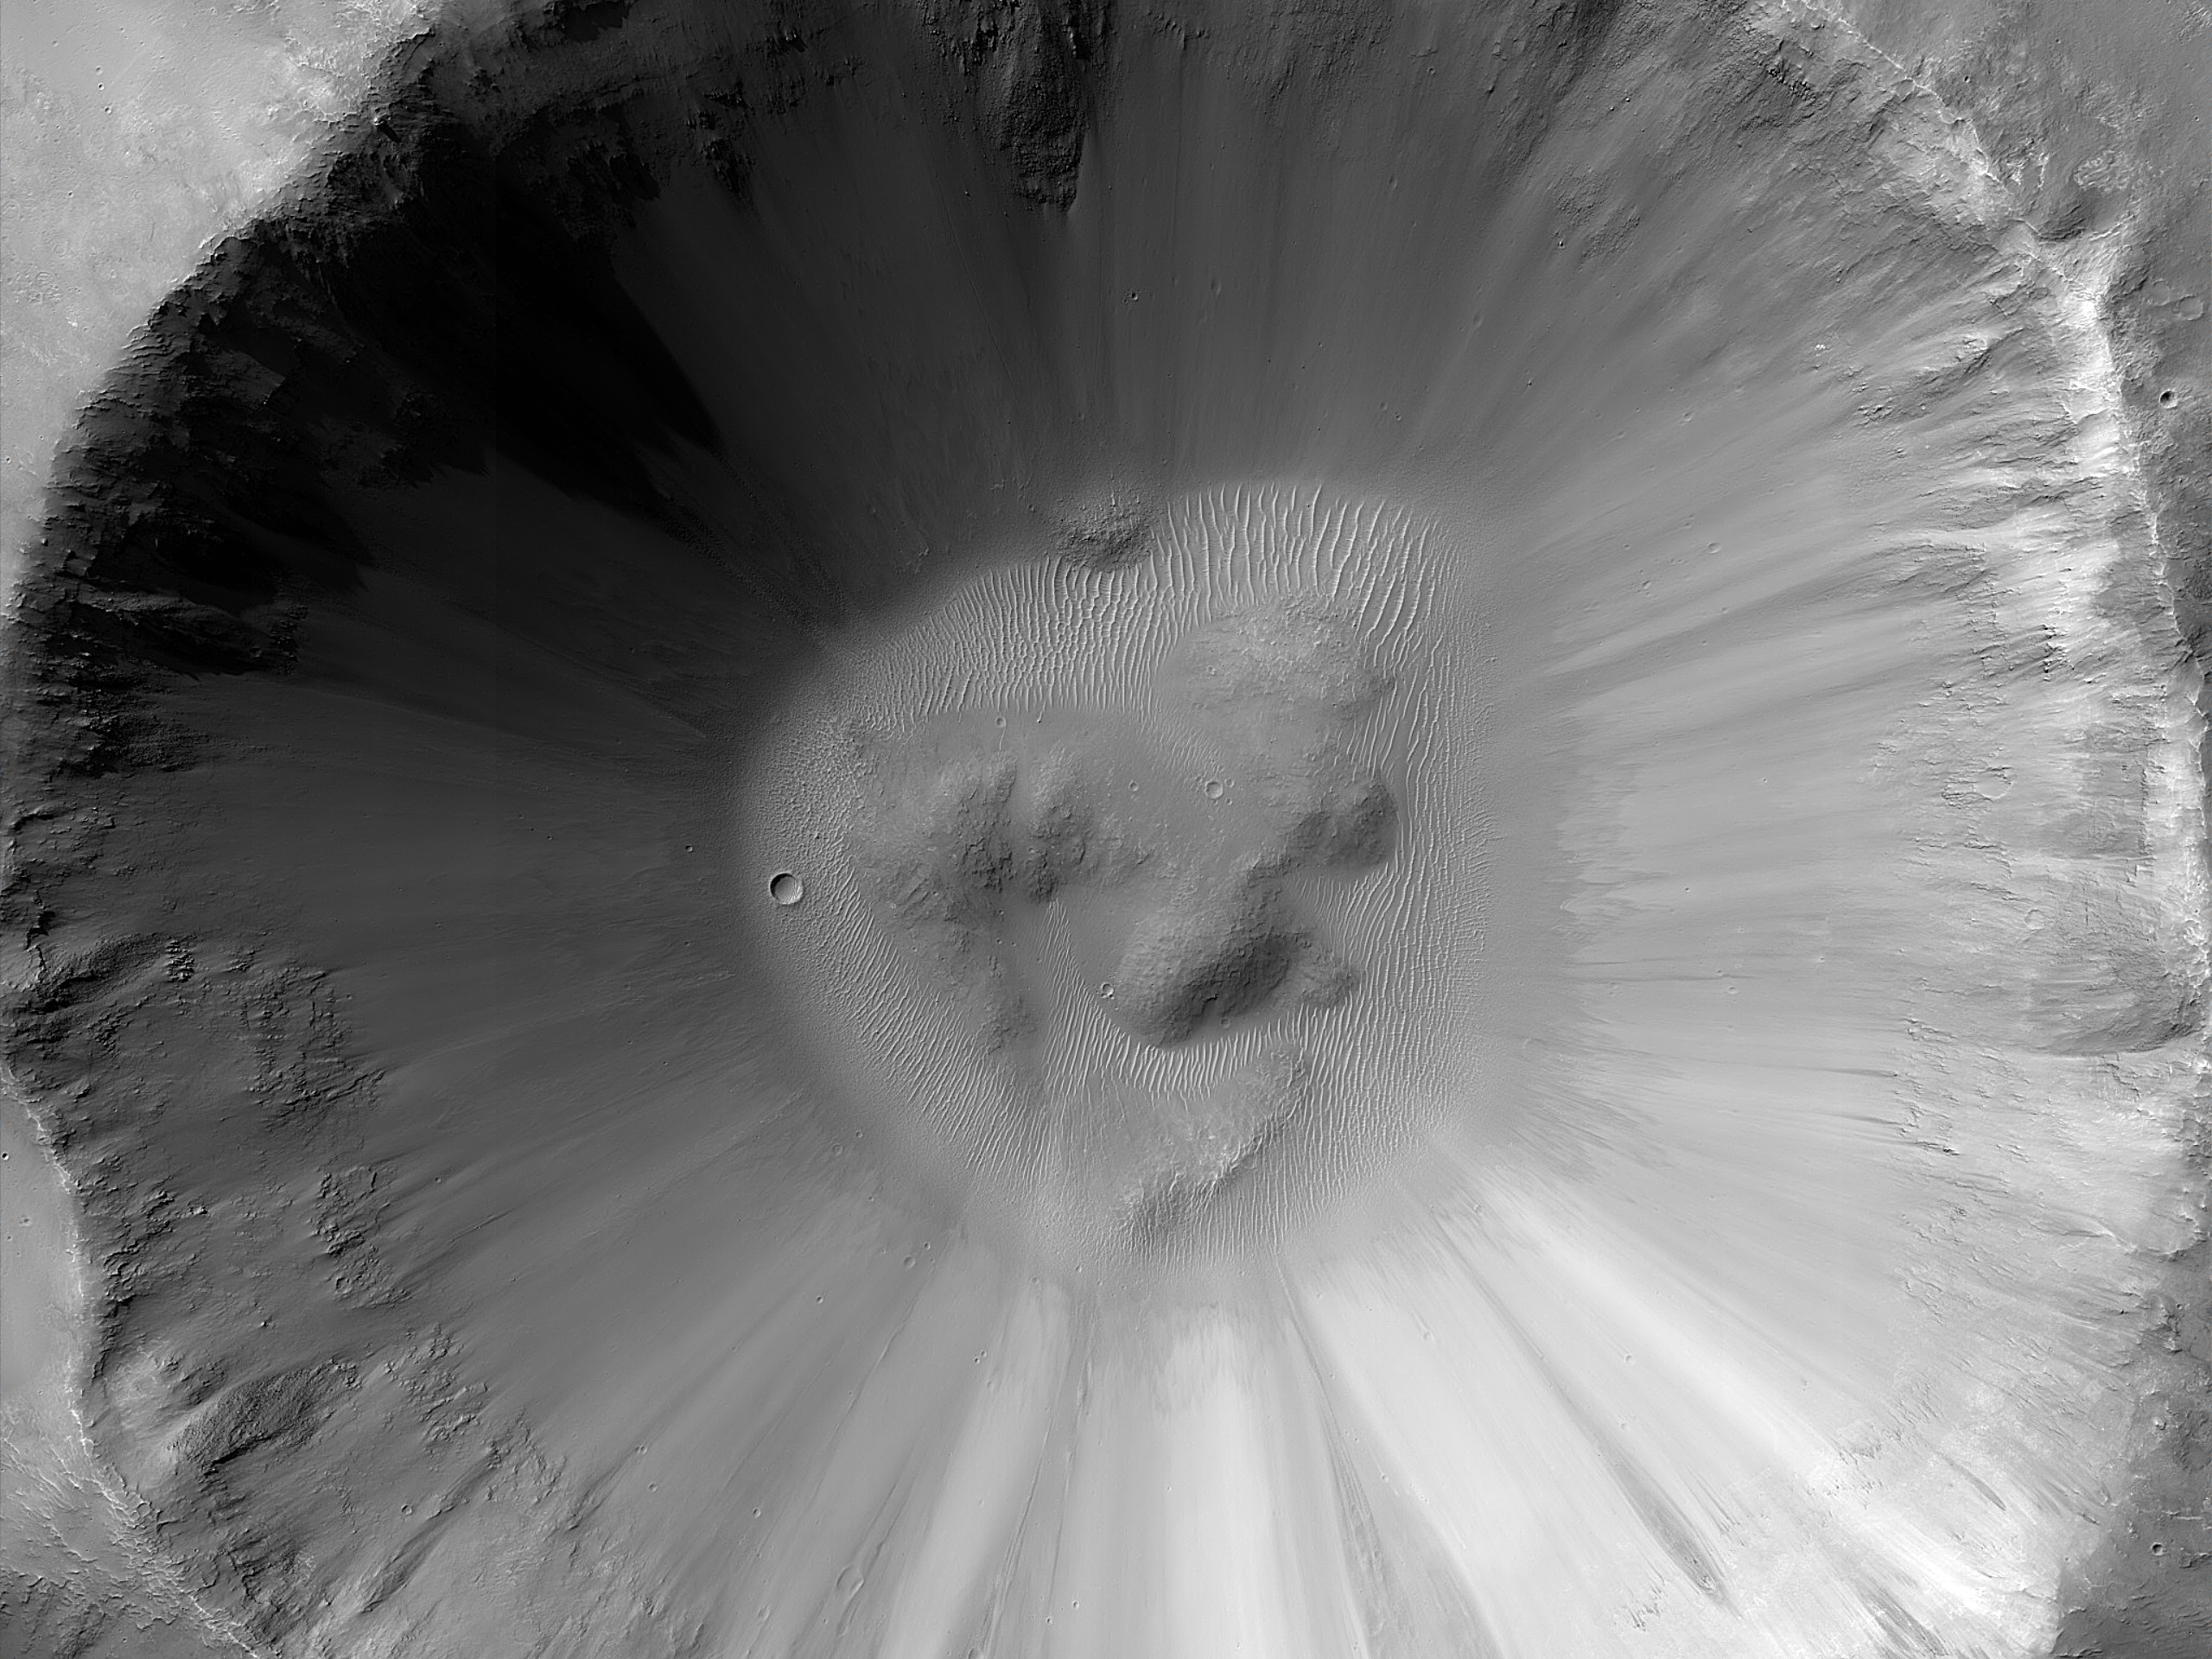 Добре збережений 5-кілометровий ударний кратер